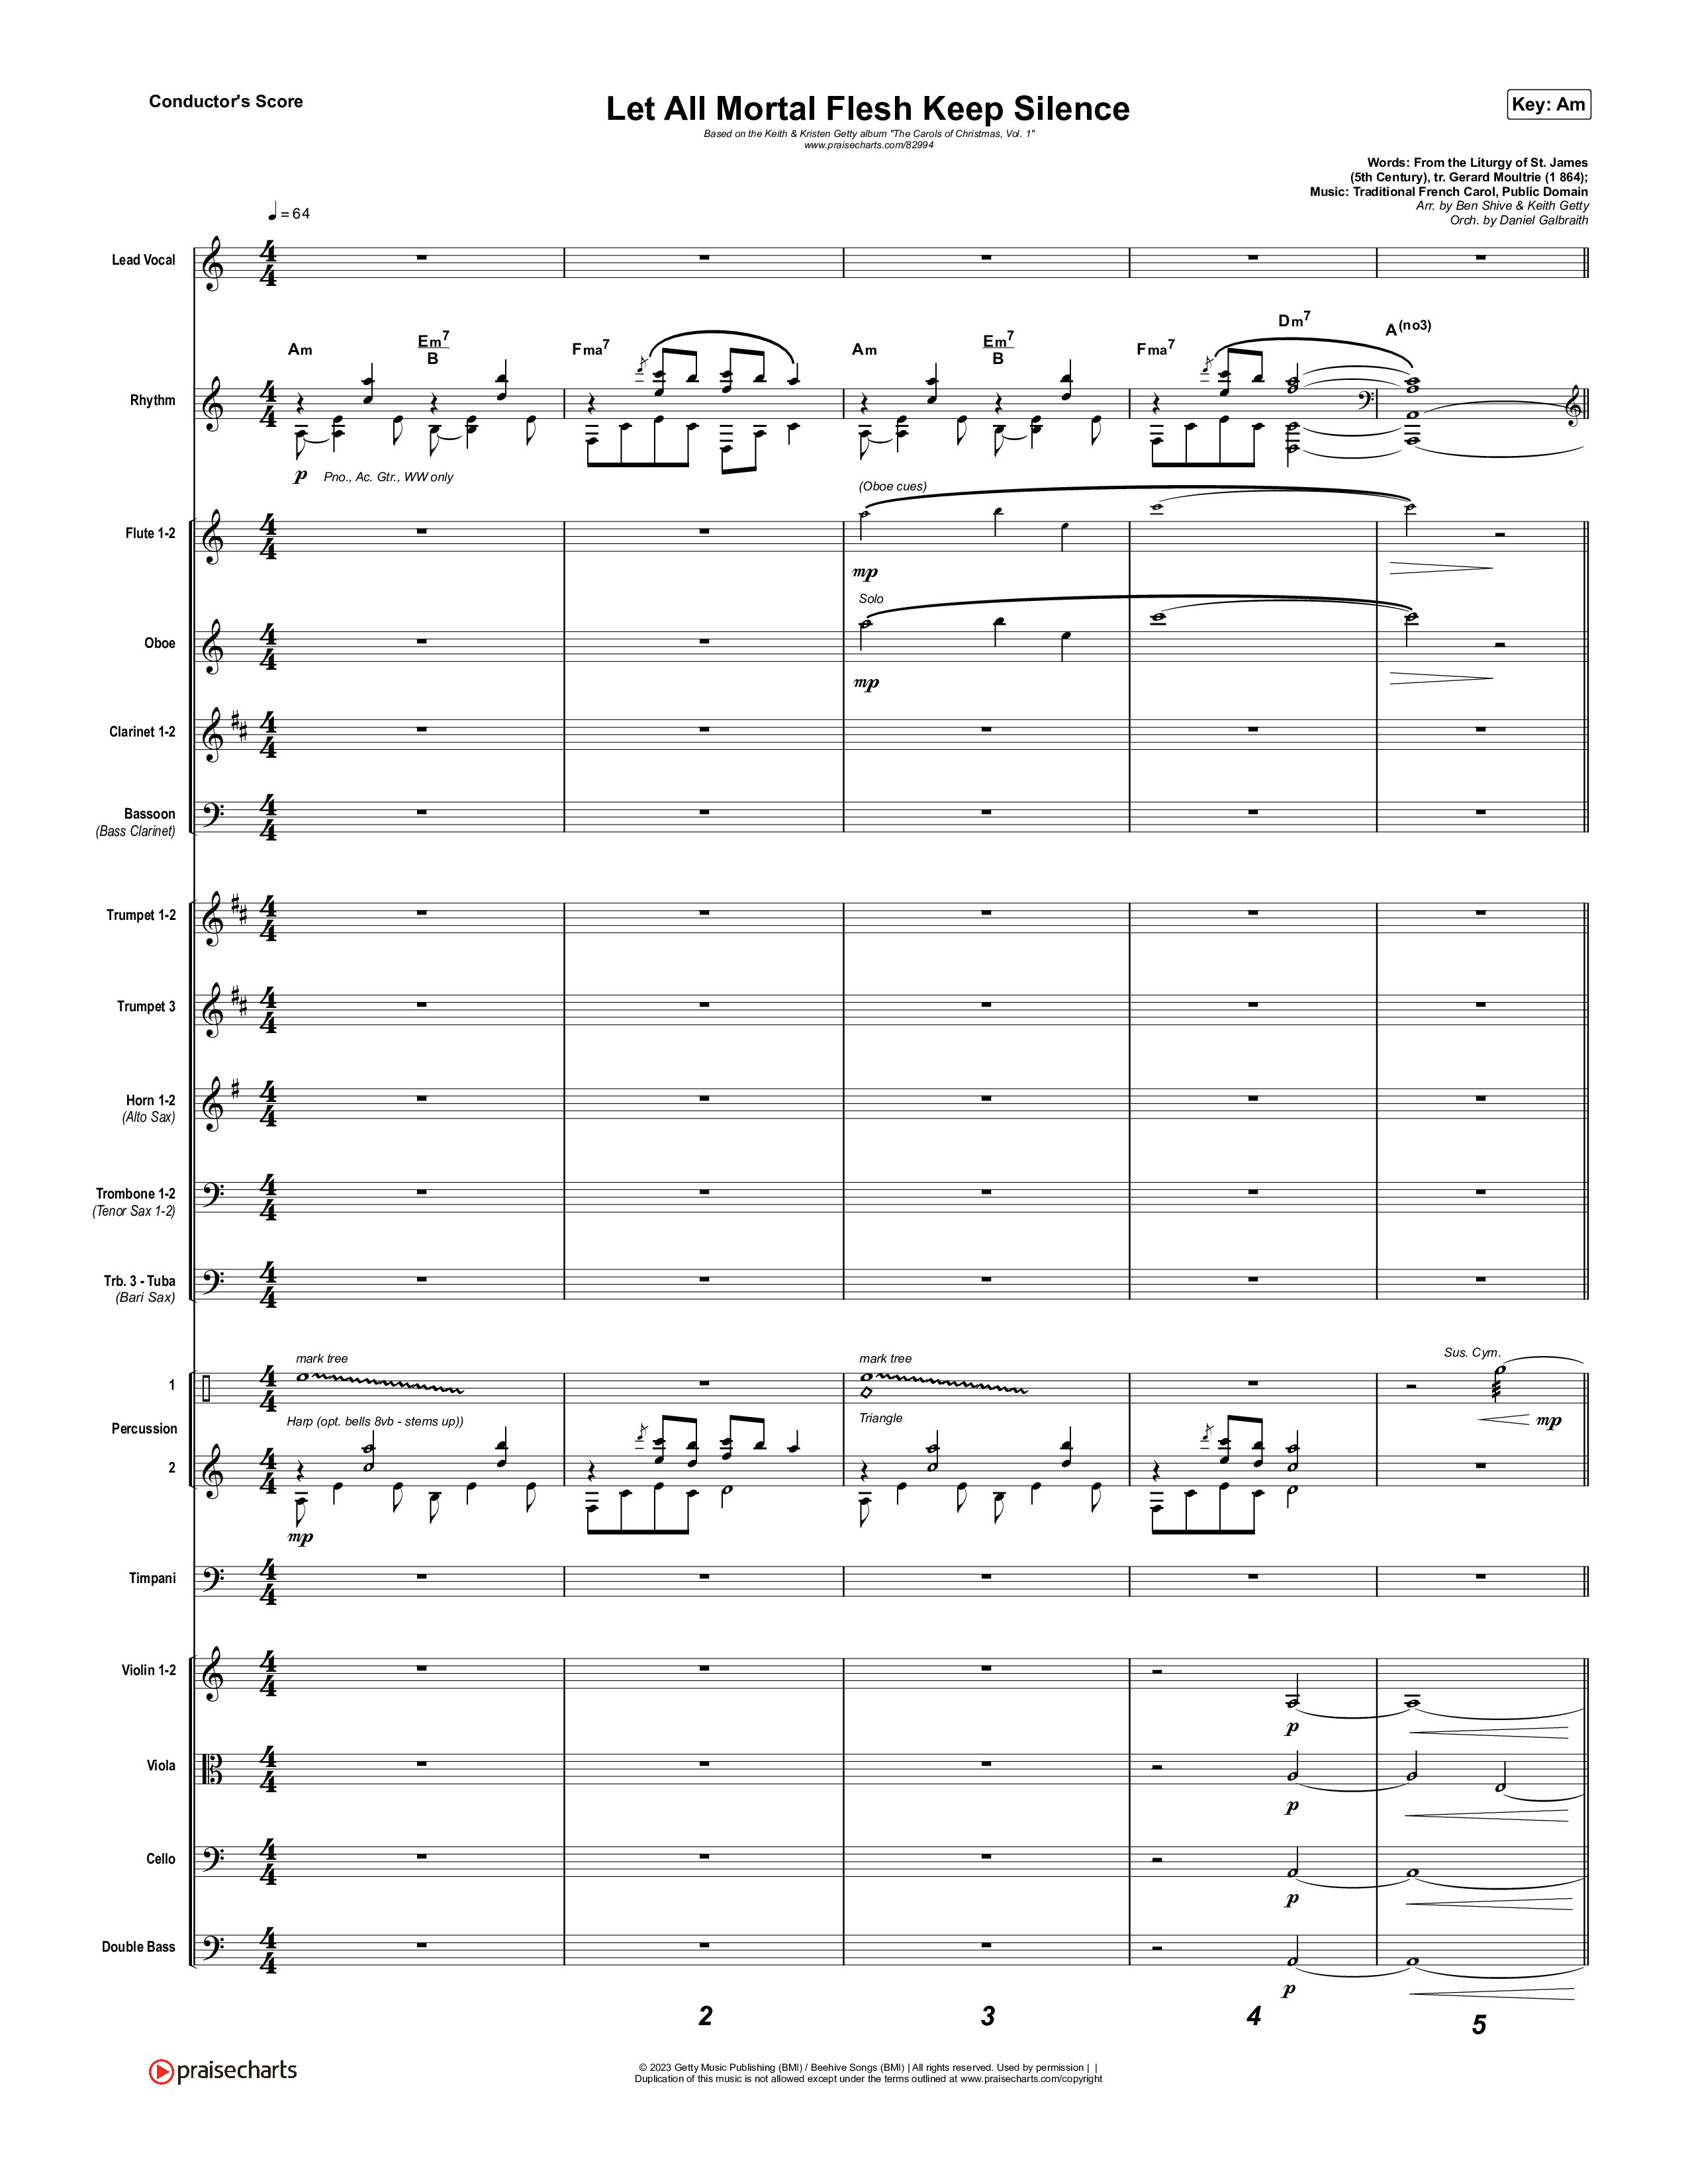 Let All Mortal Flesh Keep Silence Conductor's Score (Keith & Kristyn Getty / JJ Heller)